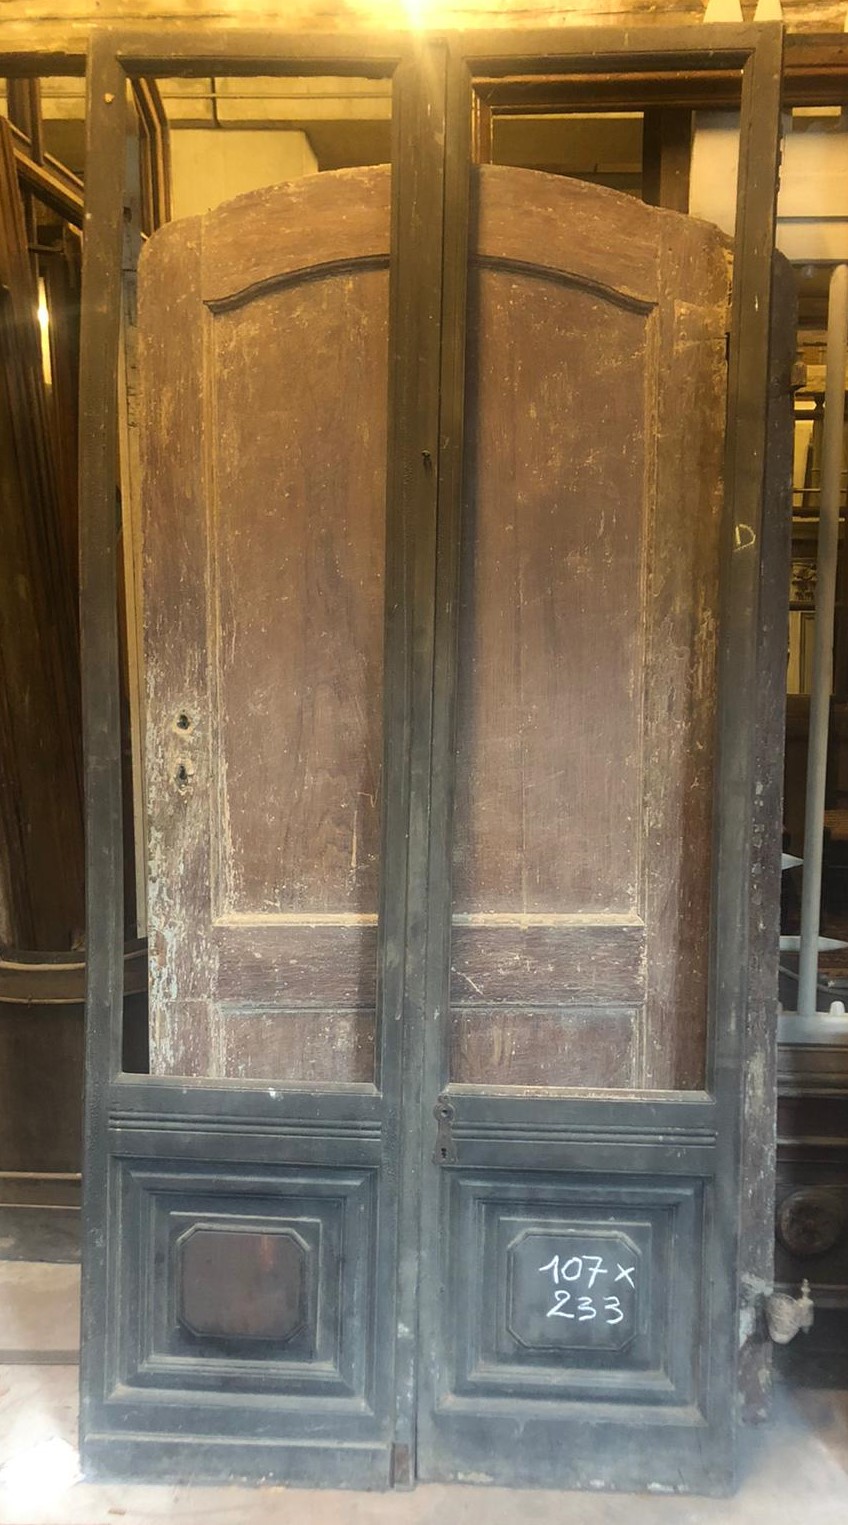 neg052 - porte de magasin, XVIIIe siècle, cm L 107 x H 233